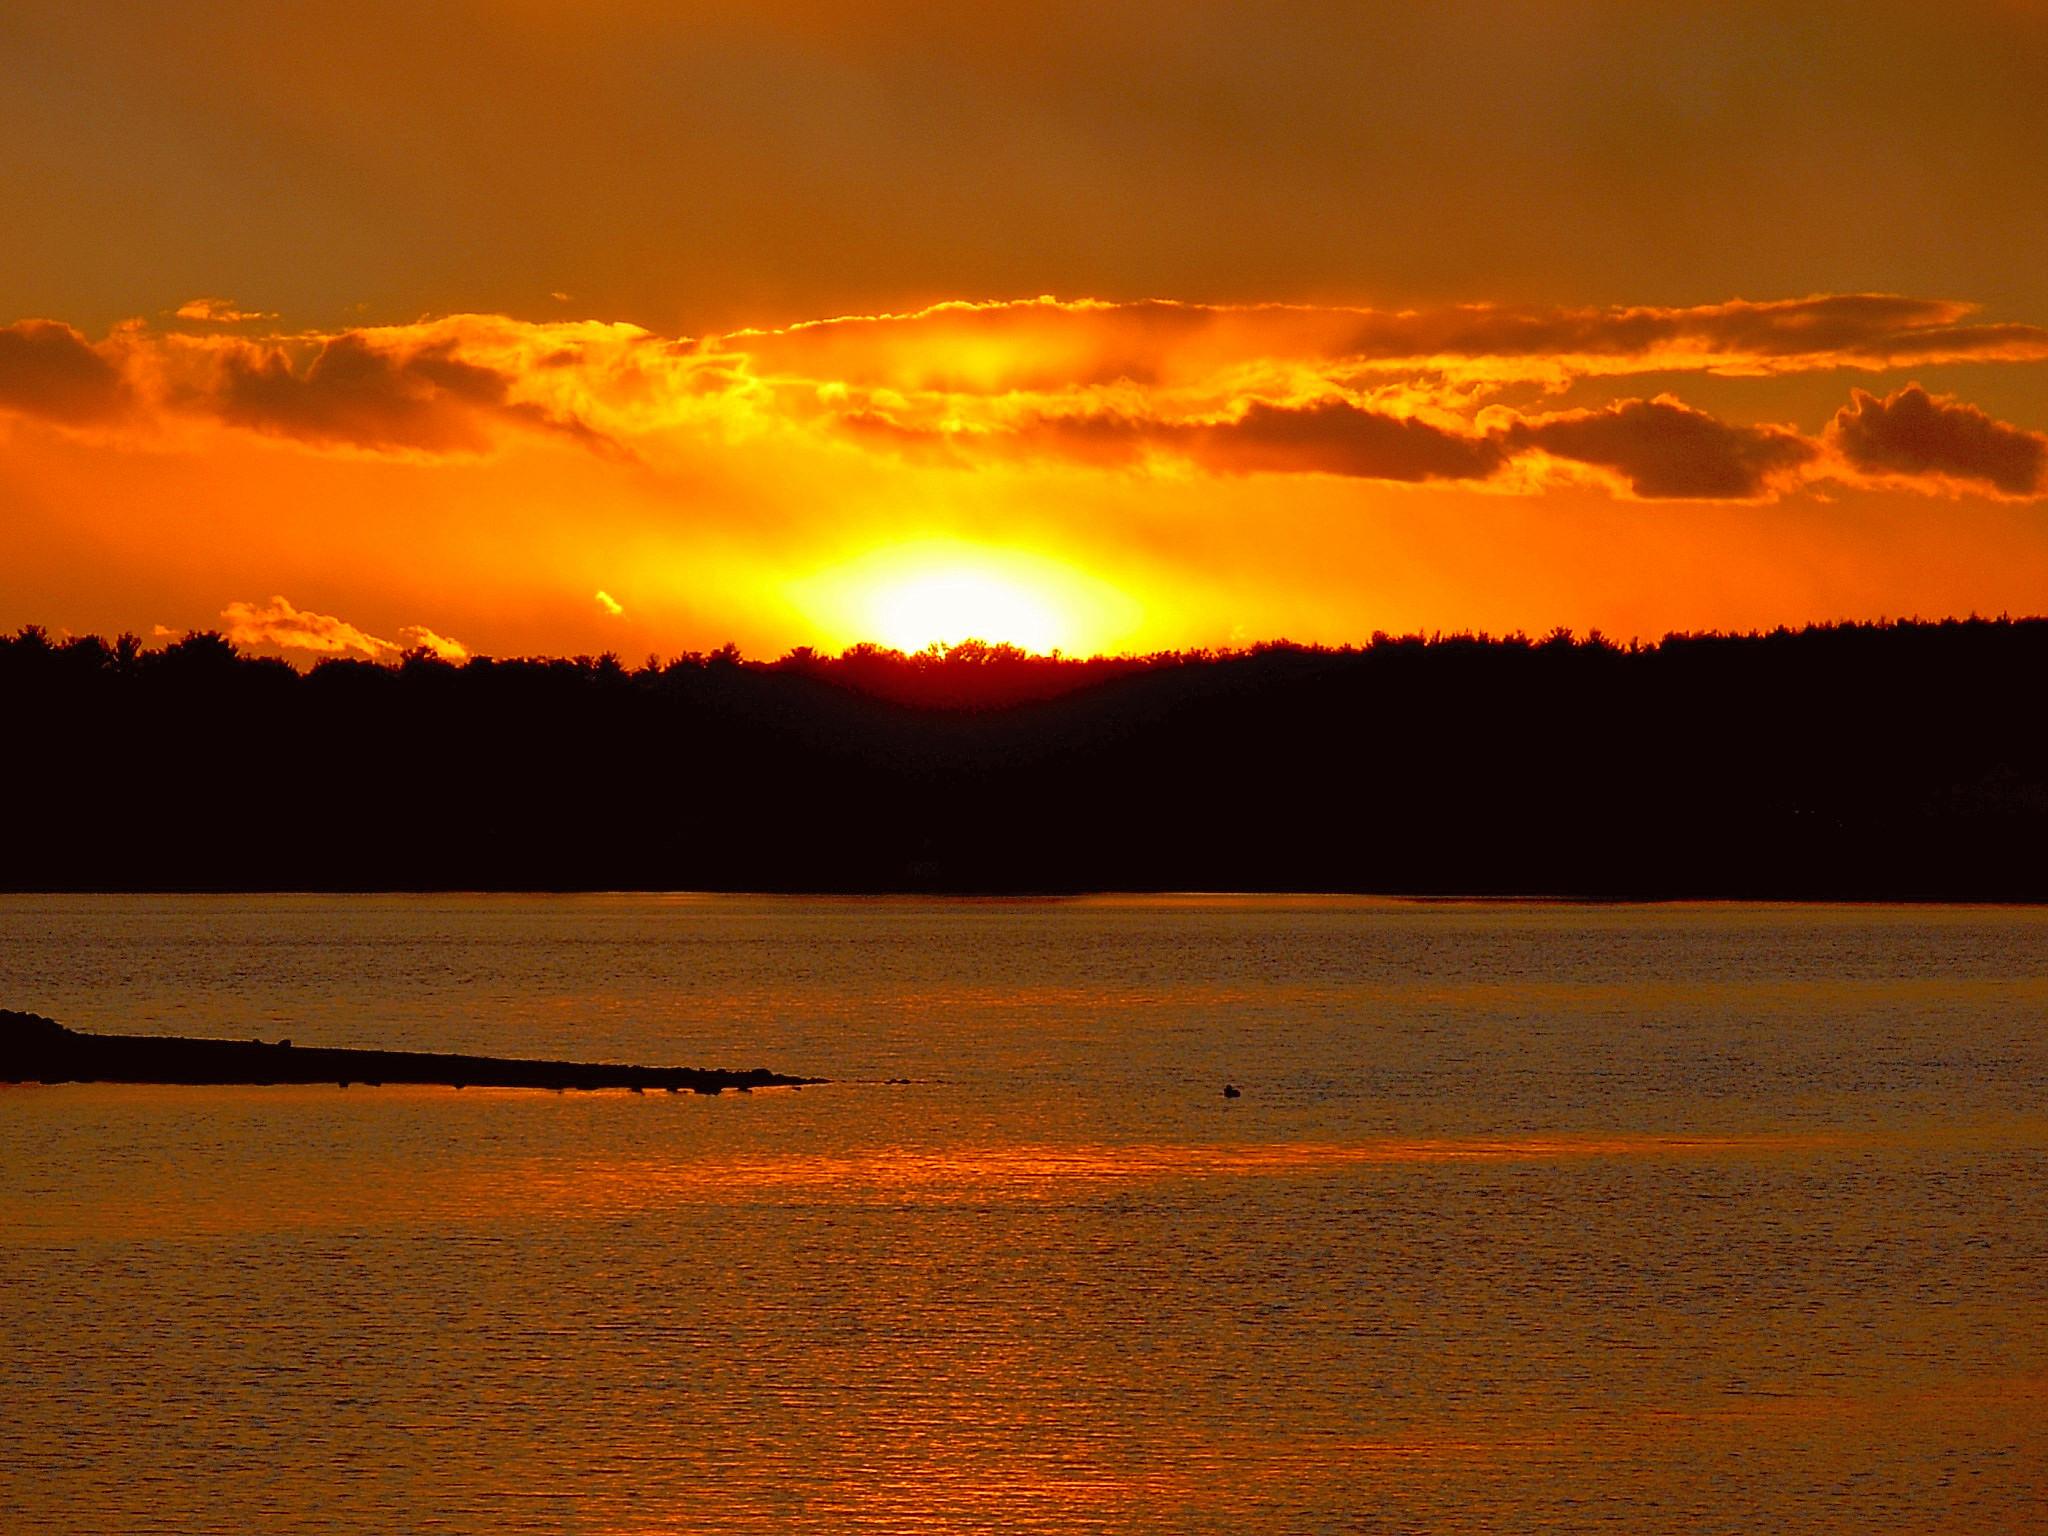 Sunset on Nabnasset Lake (user submitted)